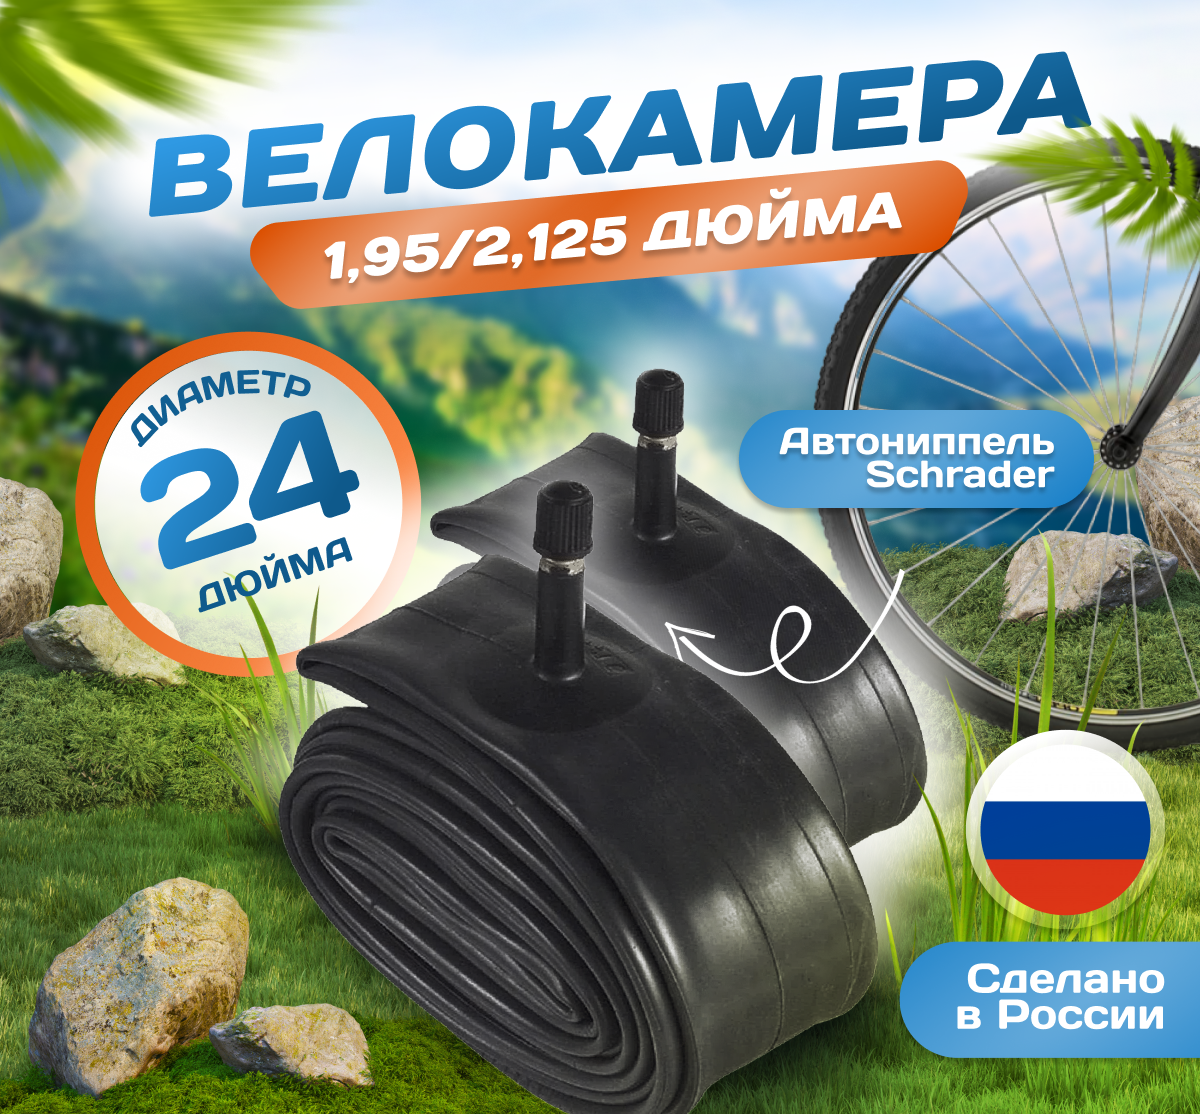 Камера для велосипеда 24х1,95-2,125 (Комплект 2шт) (47/57-507), Российского производства. Автониппель Schrader 32mm